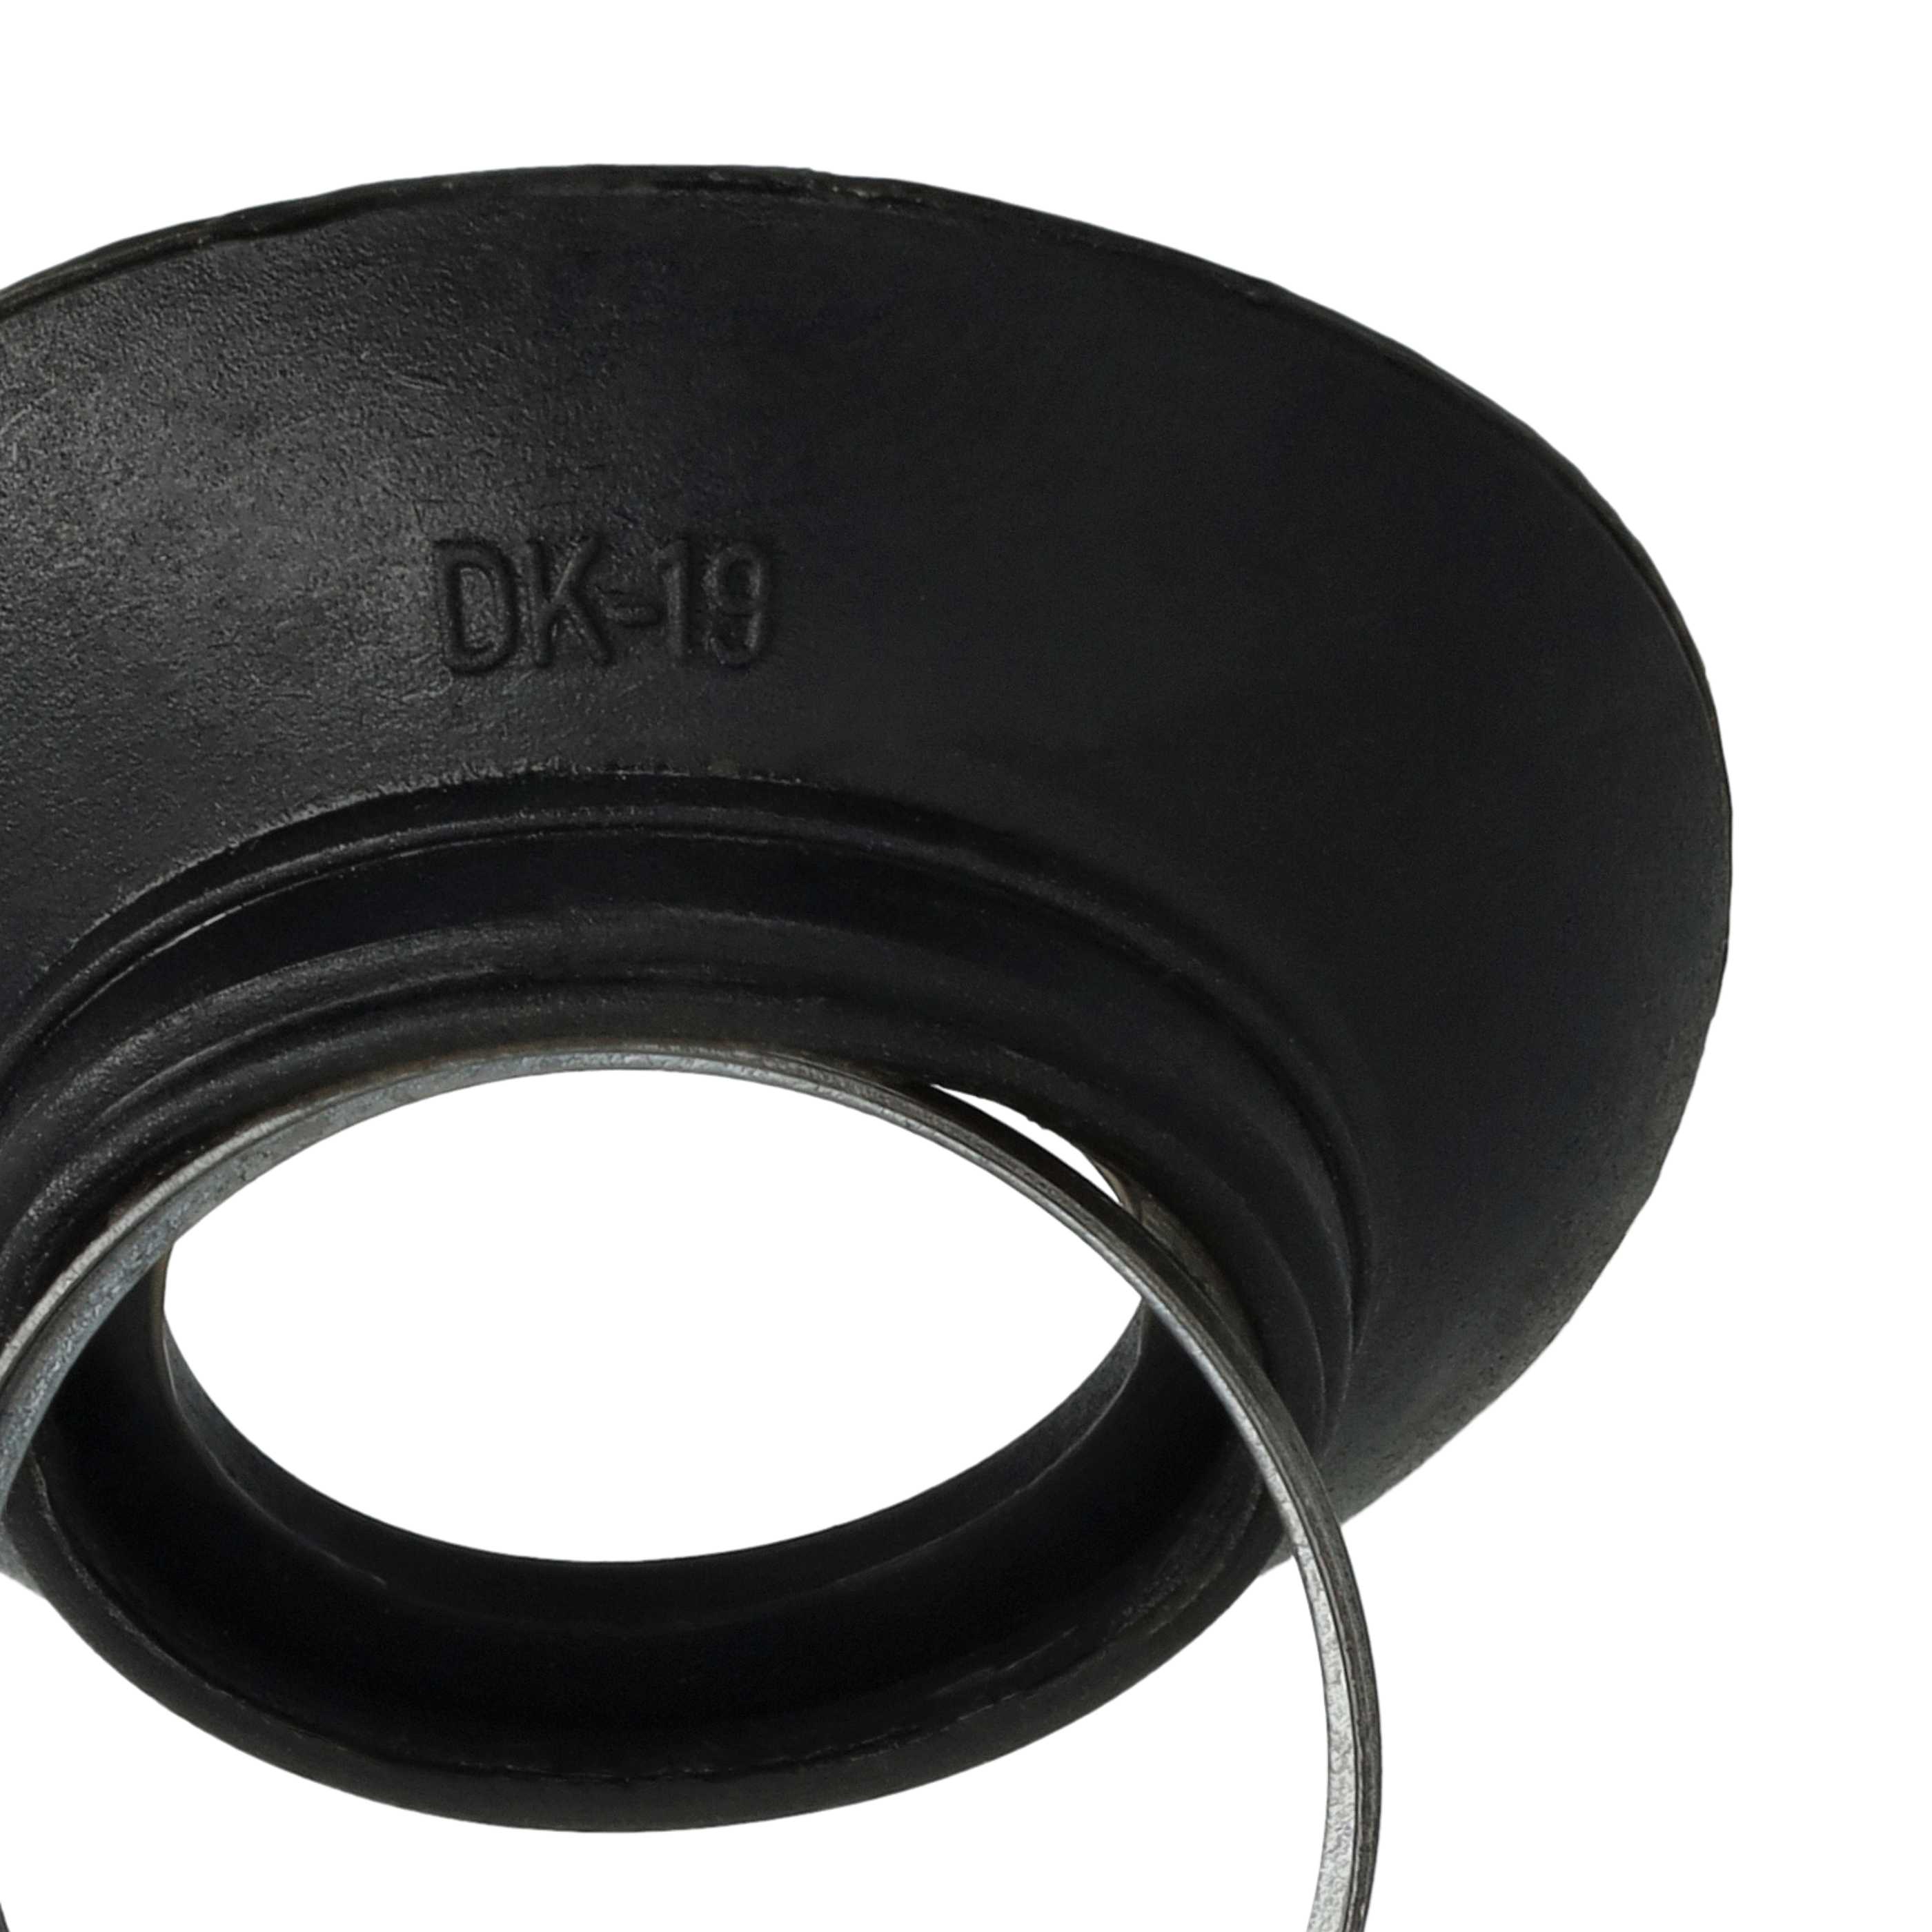 Augenmuschel Sucher als Ersatz für Nikon DK-19 für Nikon D810a u.a., Kunststoff